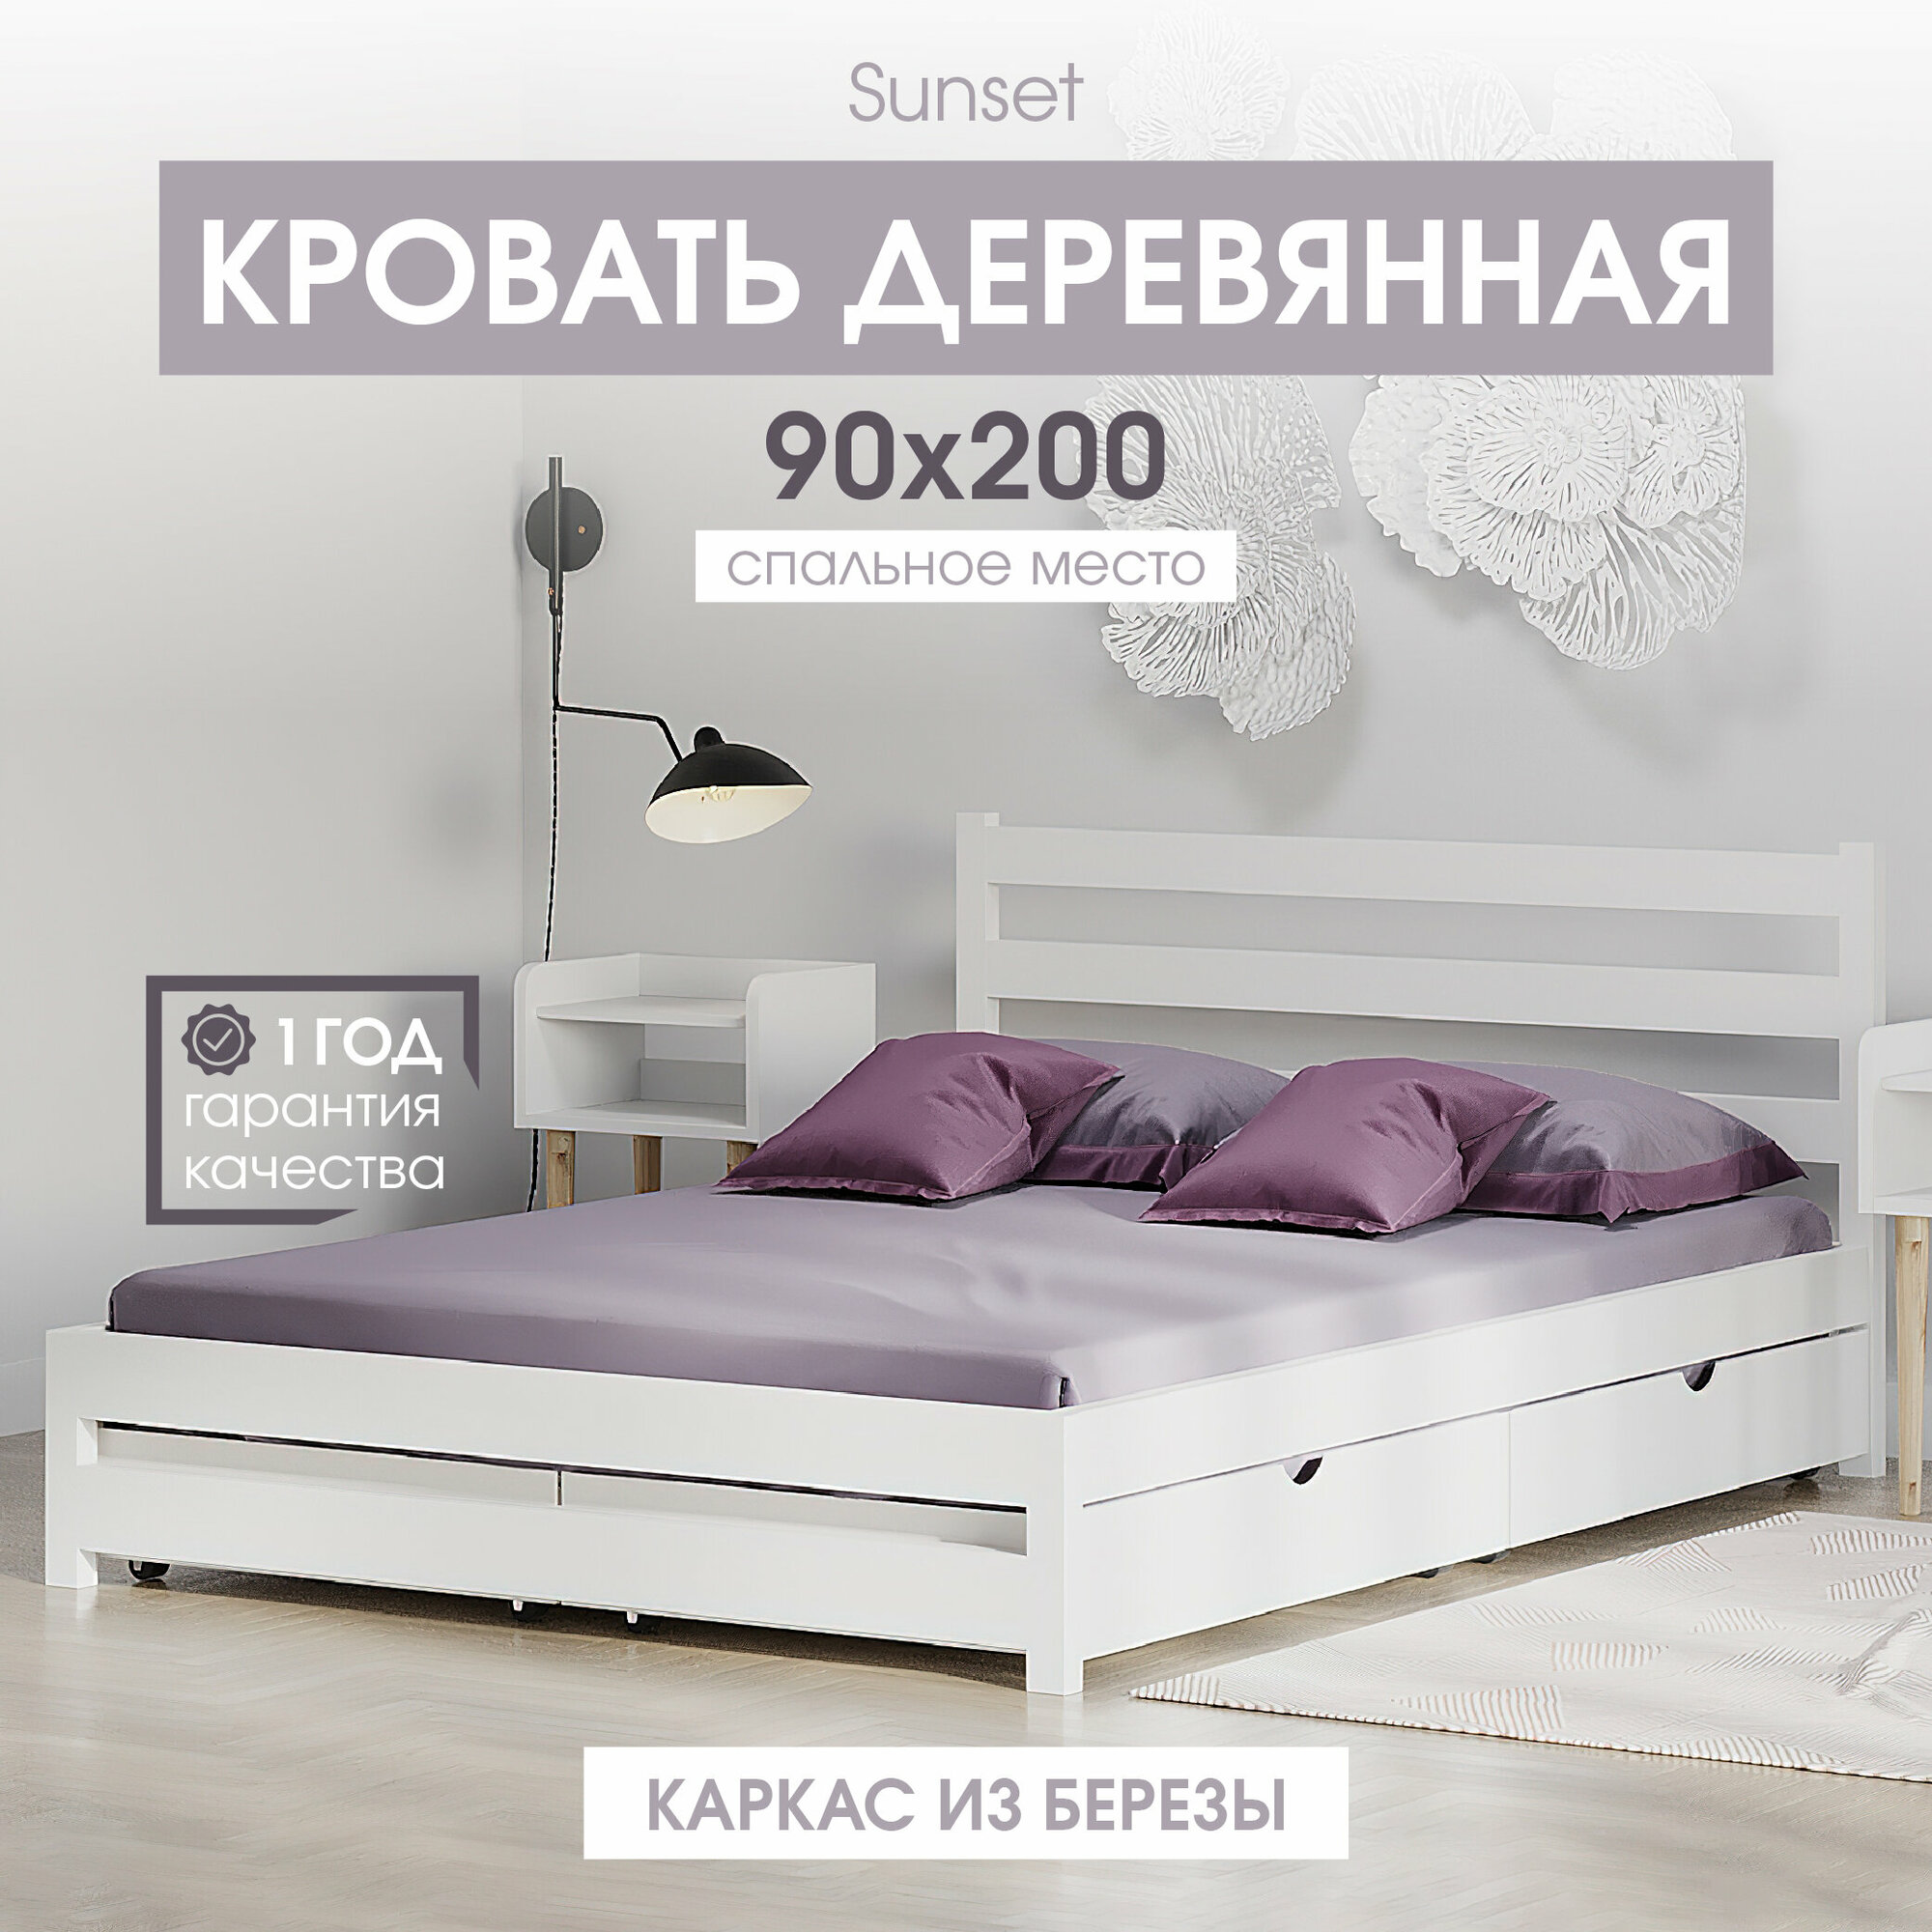 Односпальная деревянная кровать Sunset 90х200 см , цвет Белый, береза